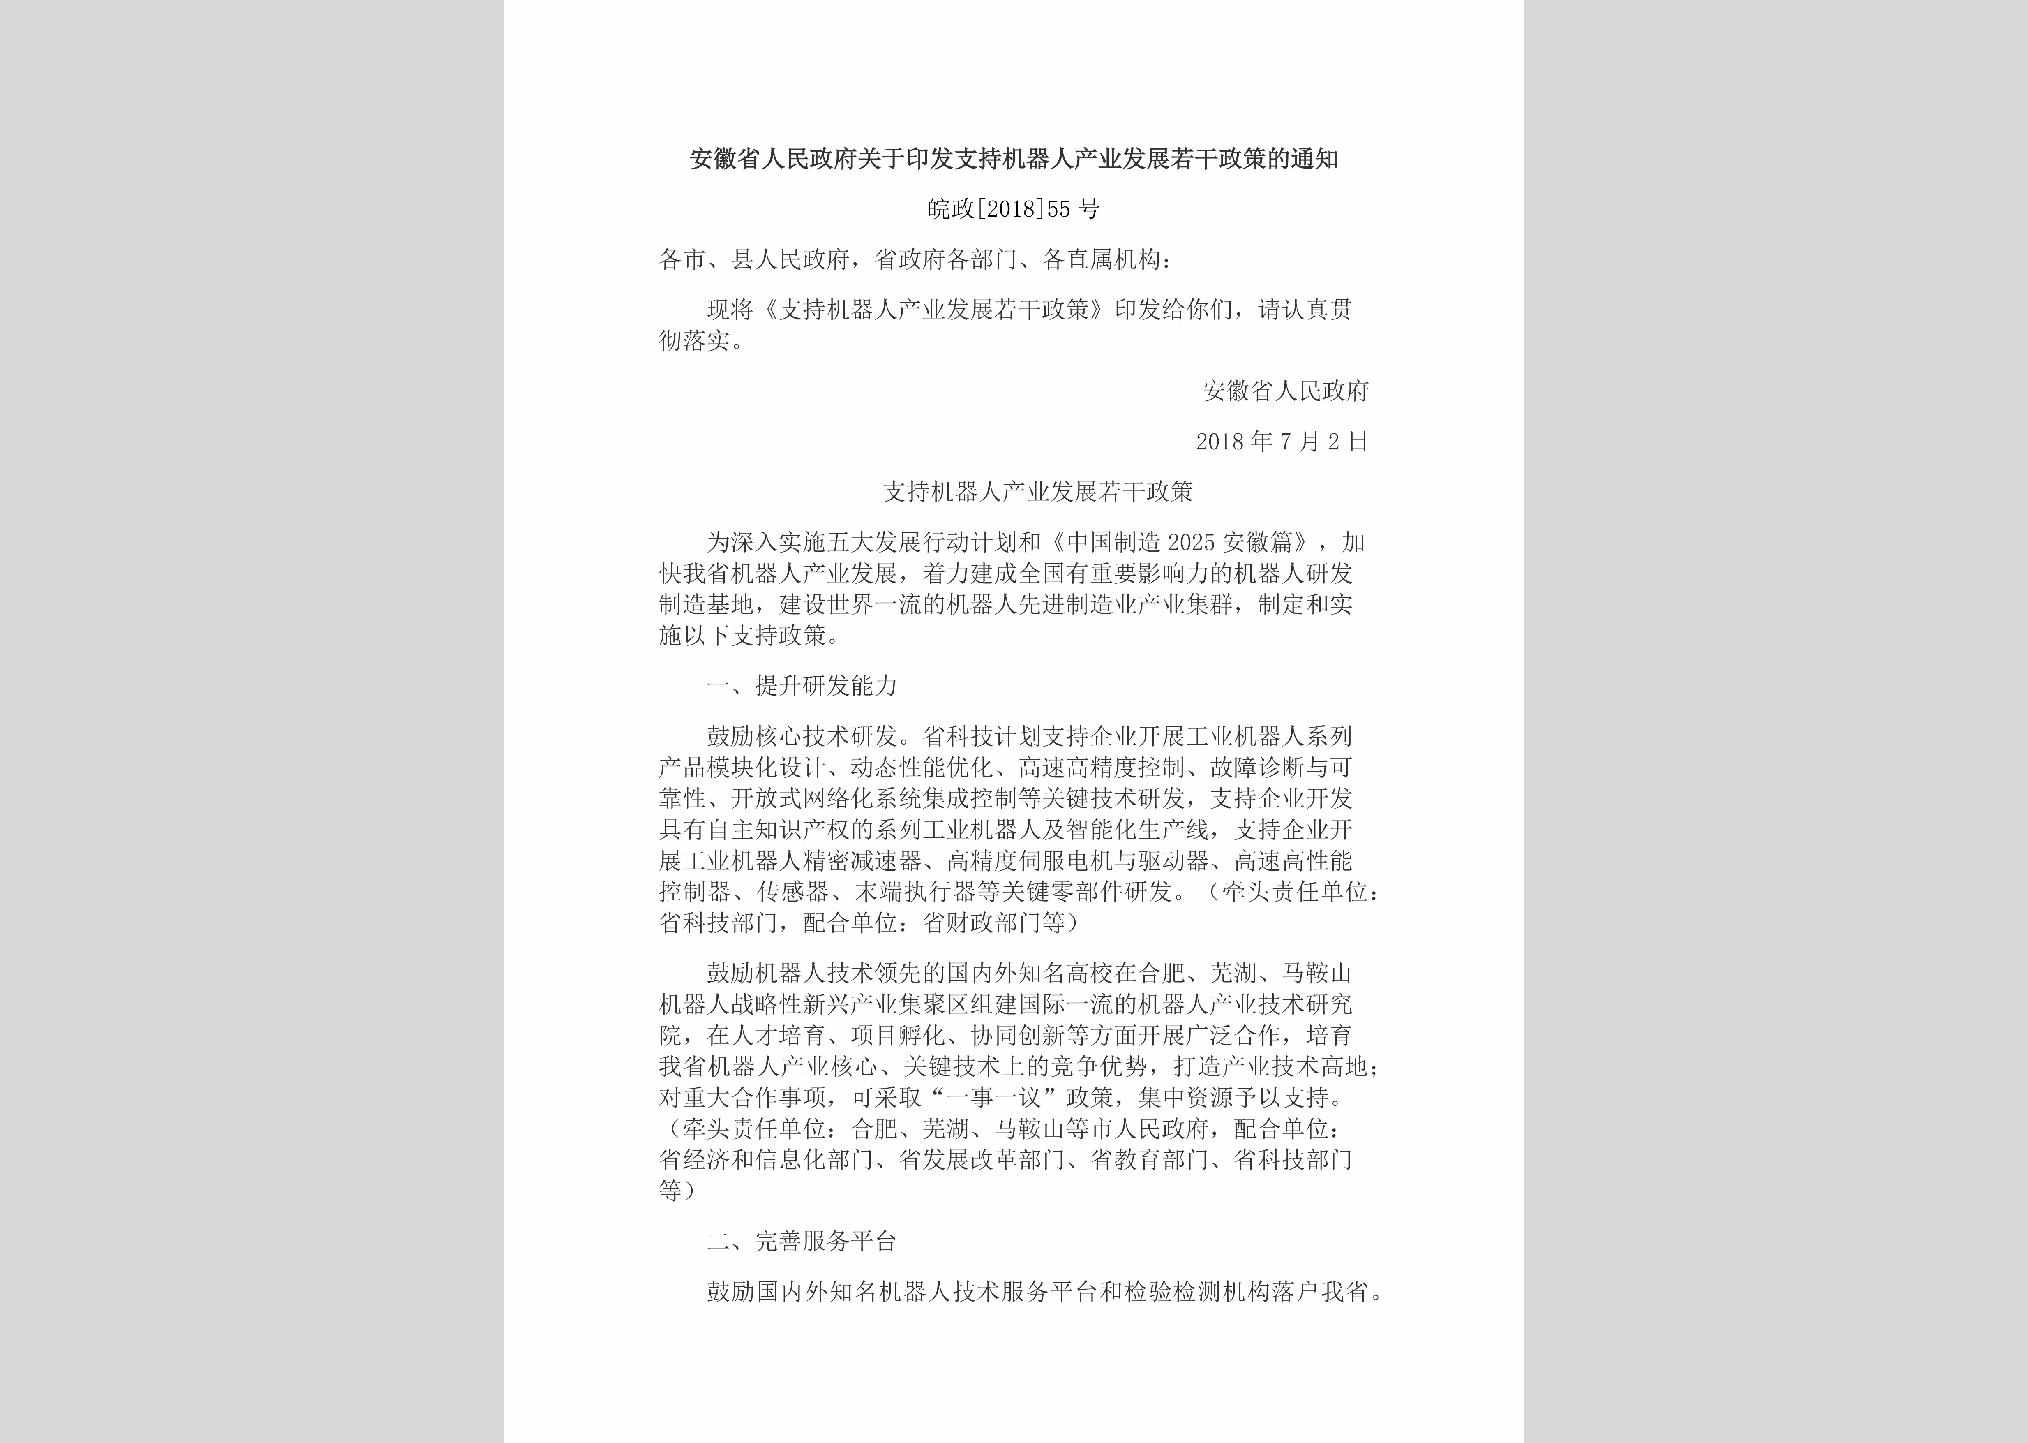 皖政[2018]55号：安徽省人民政府关于印发支持机器人产业发展若干政策的通知